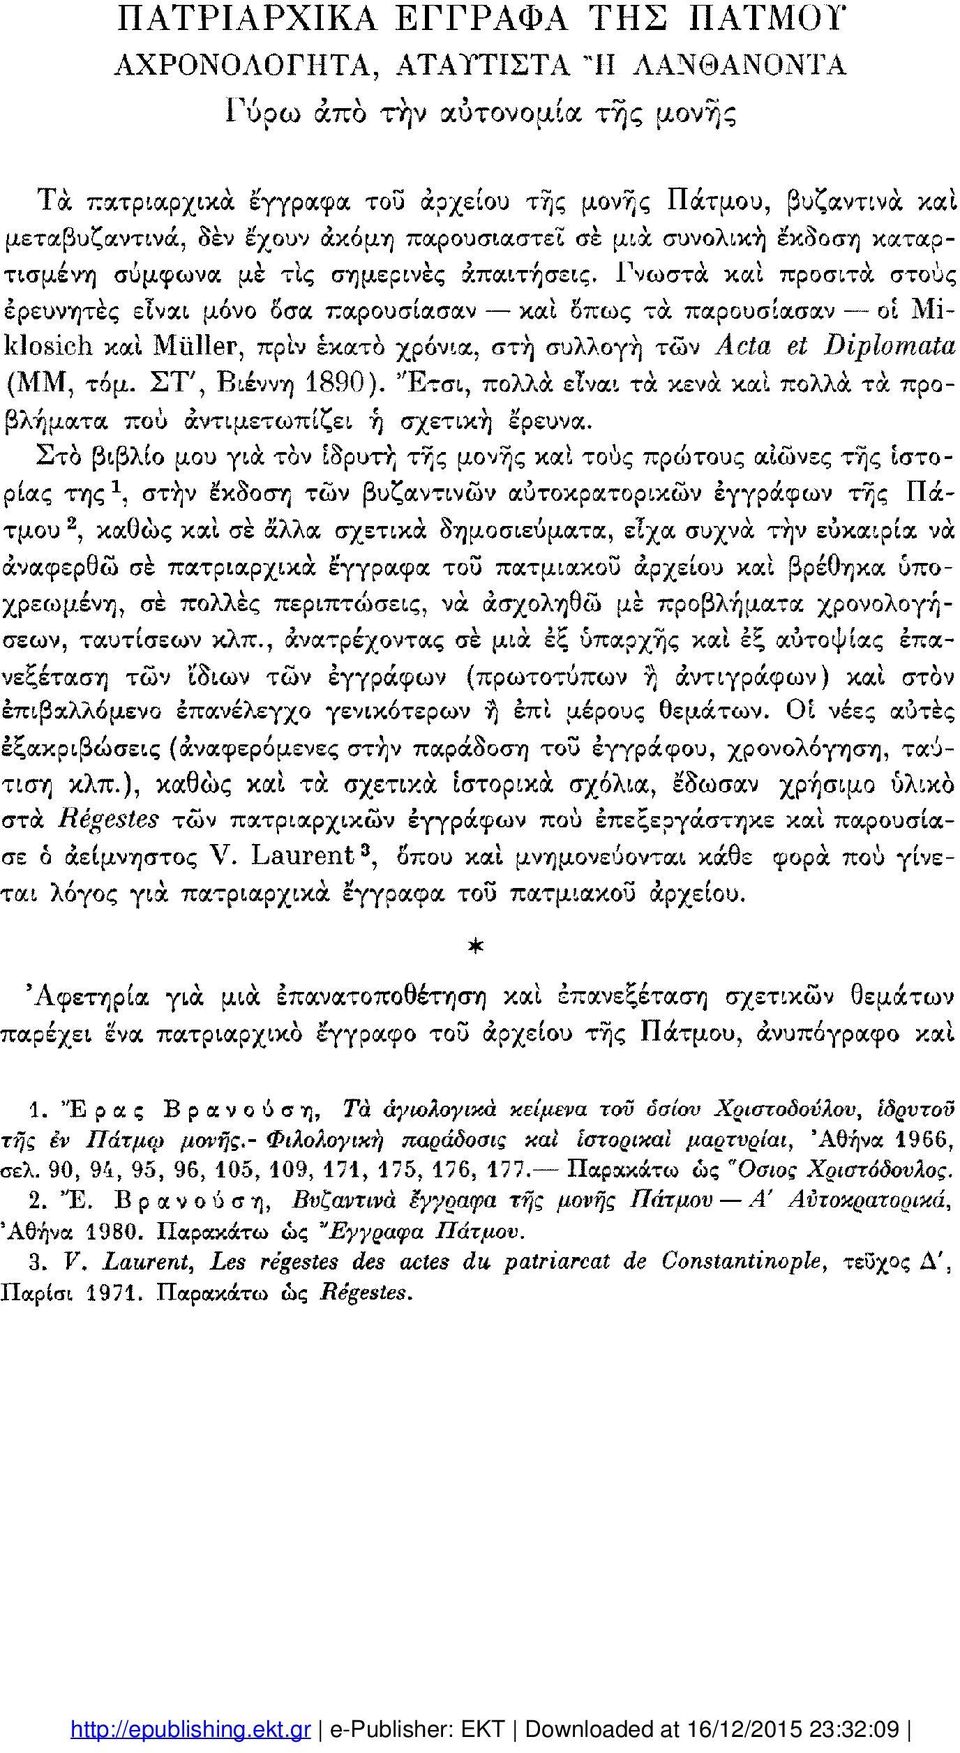 Γνωστά καί προσιτά στους ερευνητές είναι μόνο δσα παρουσίασαν καί δπως τα παρουσίασαν οί Miklosich καί Müller, πριν εκατό χρόνια, στή συλλογή τών Acta et Diplomata (MM, τόμ. Σ Τ ', Βιέννη 1890).